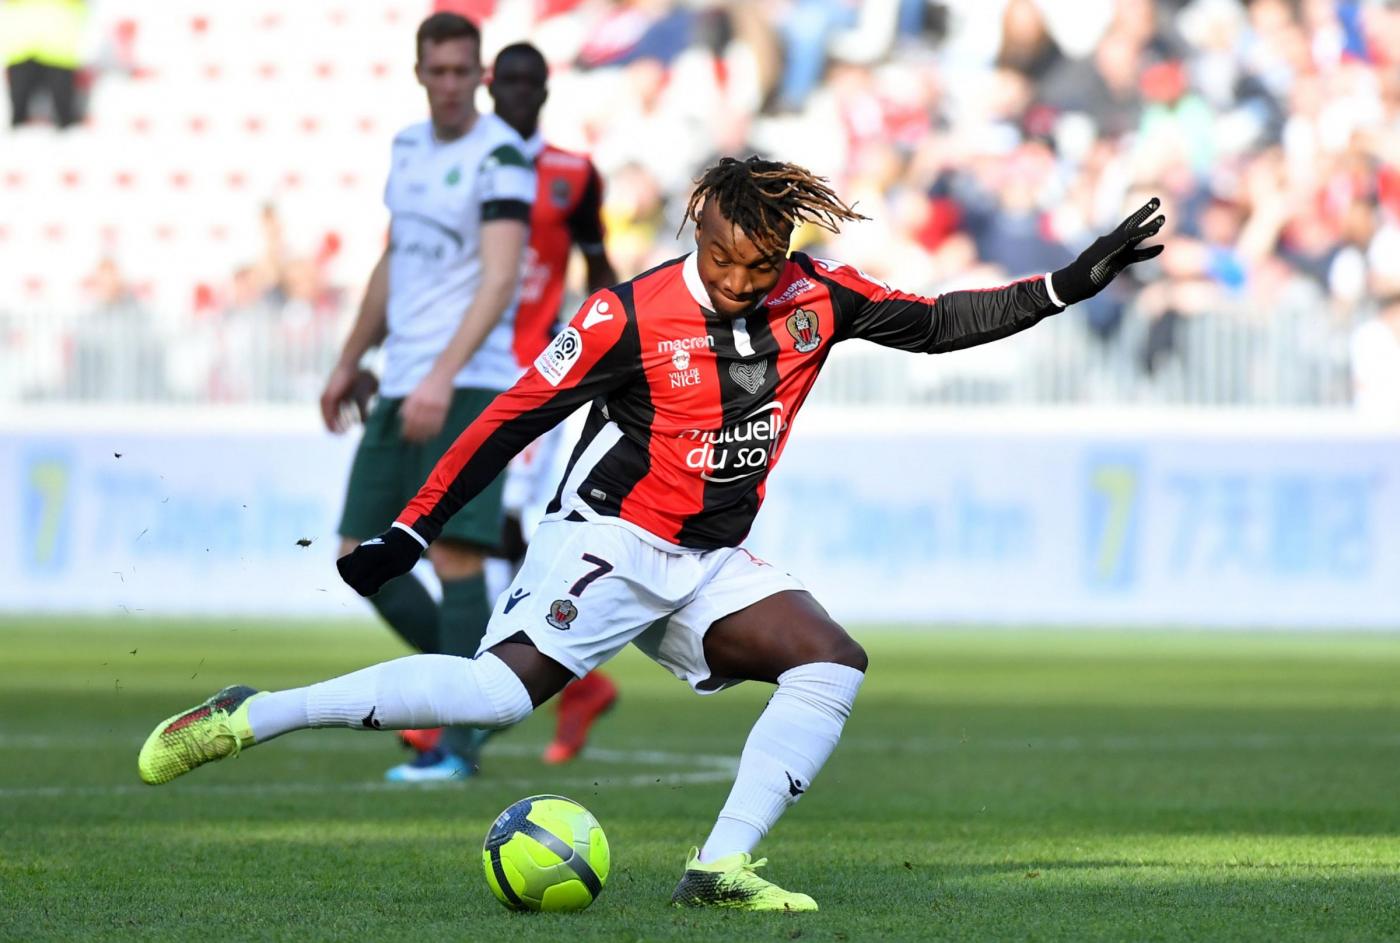 Nizza-Caen 20 aprile: si gioca per la 33 esima giornata della Serie A francese. I padroni di casa sono favoriti per i 3 punti in palio.